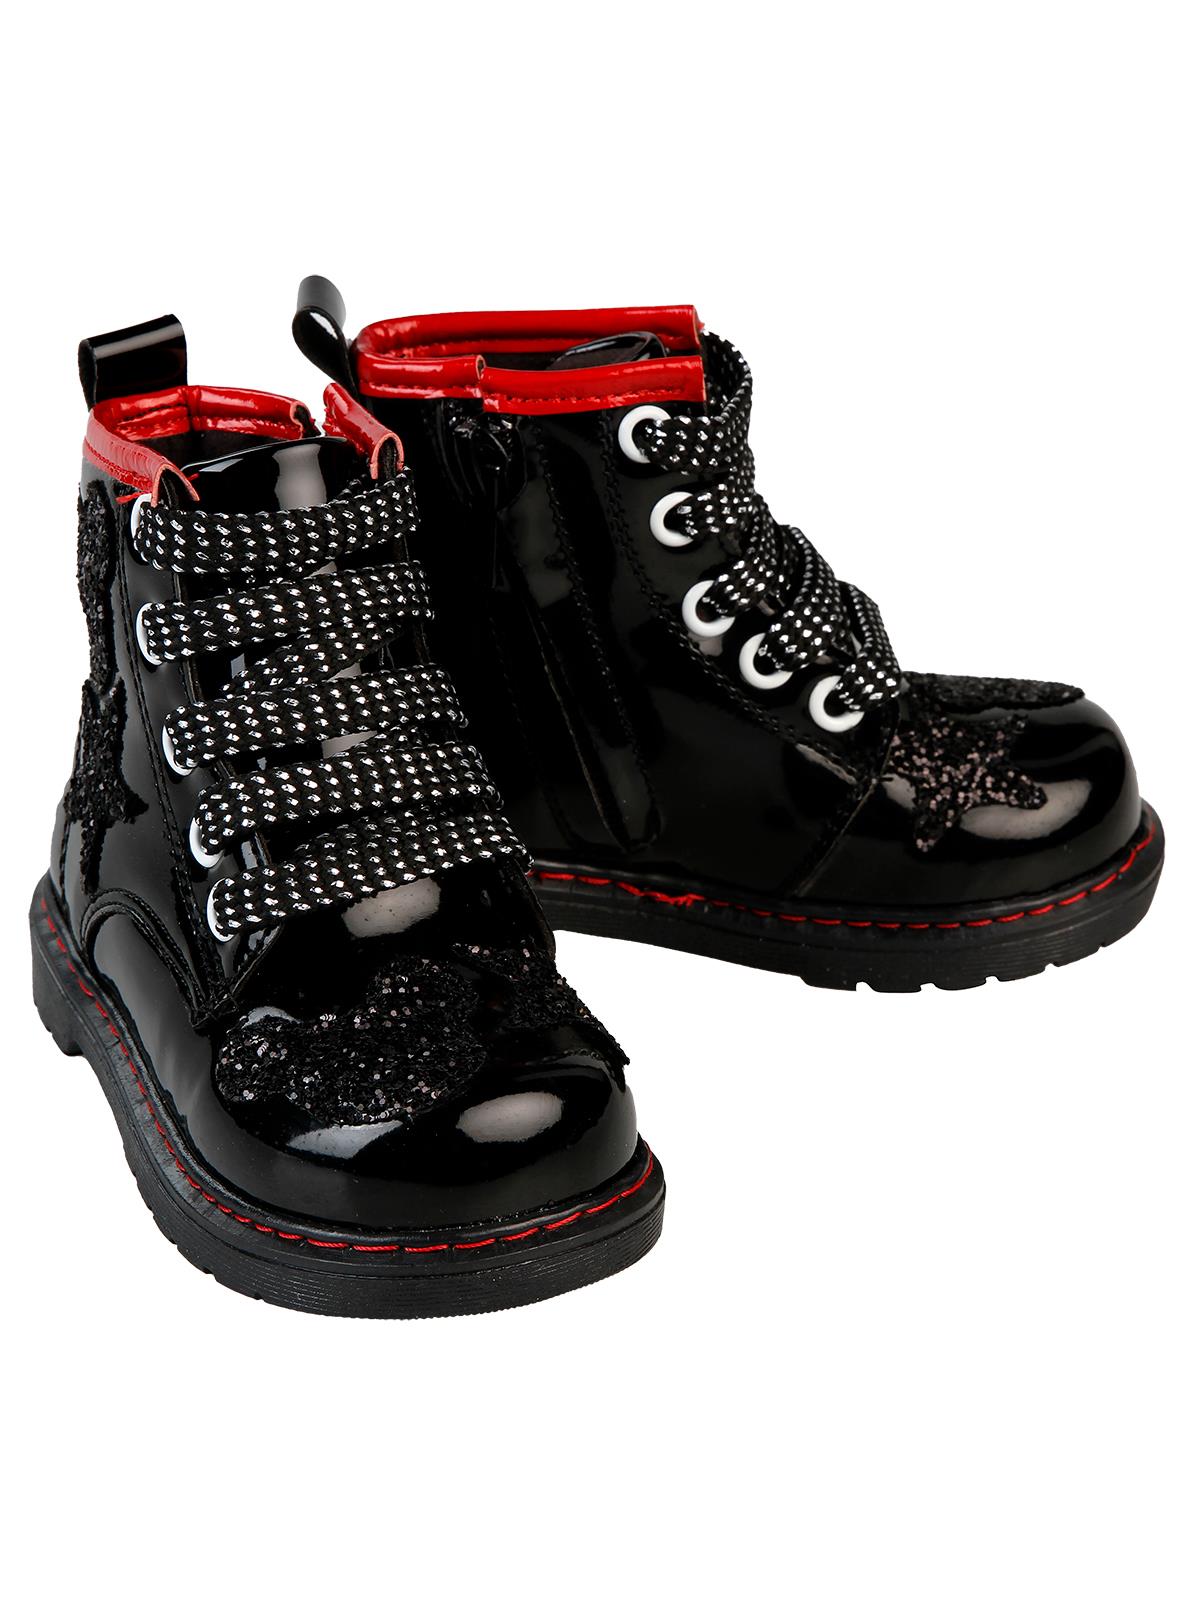 Boots Kız Çocuk Bot 21-25 Numara Siyah